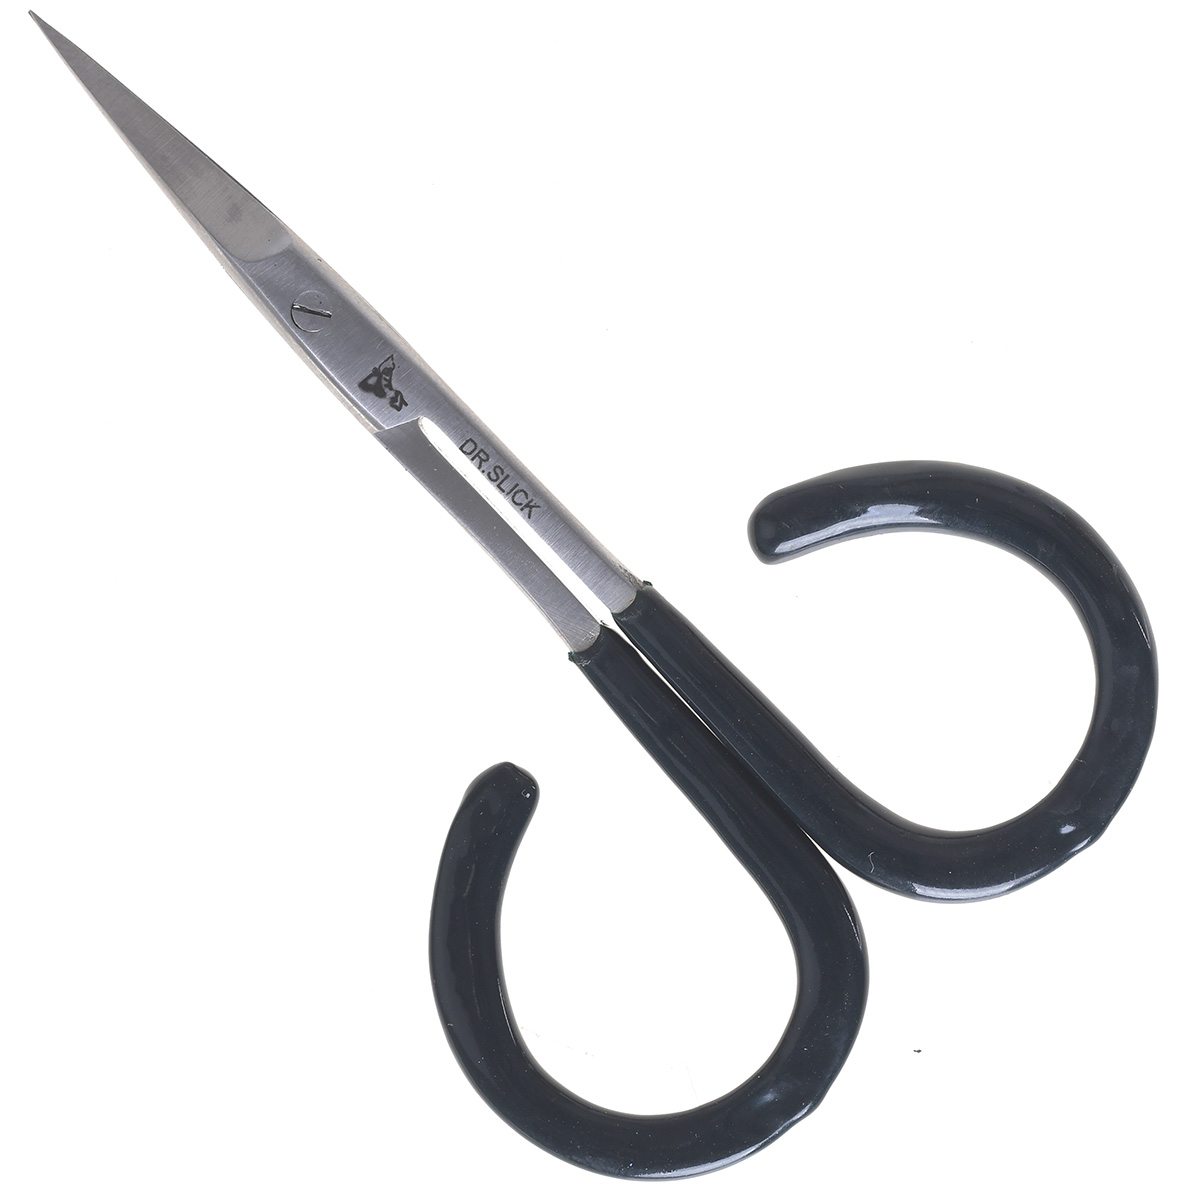 Dr Slick 4 All Purpose Open Loop Scissor